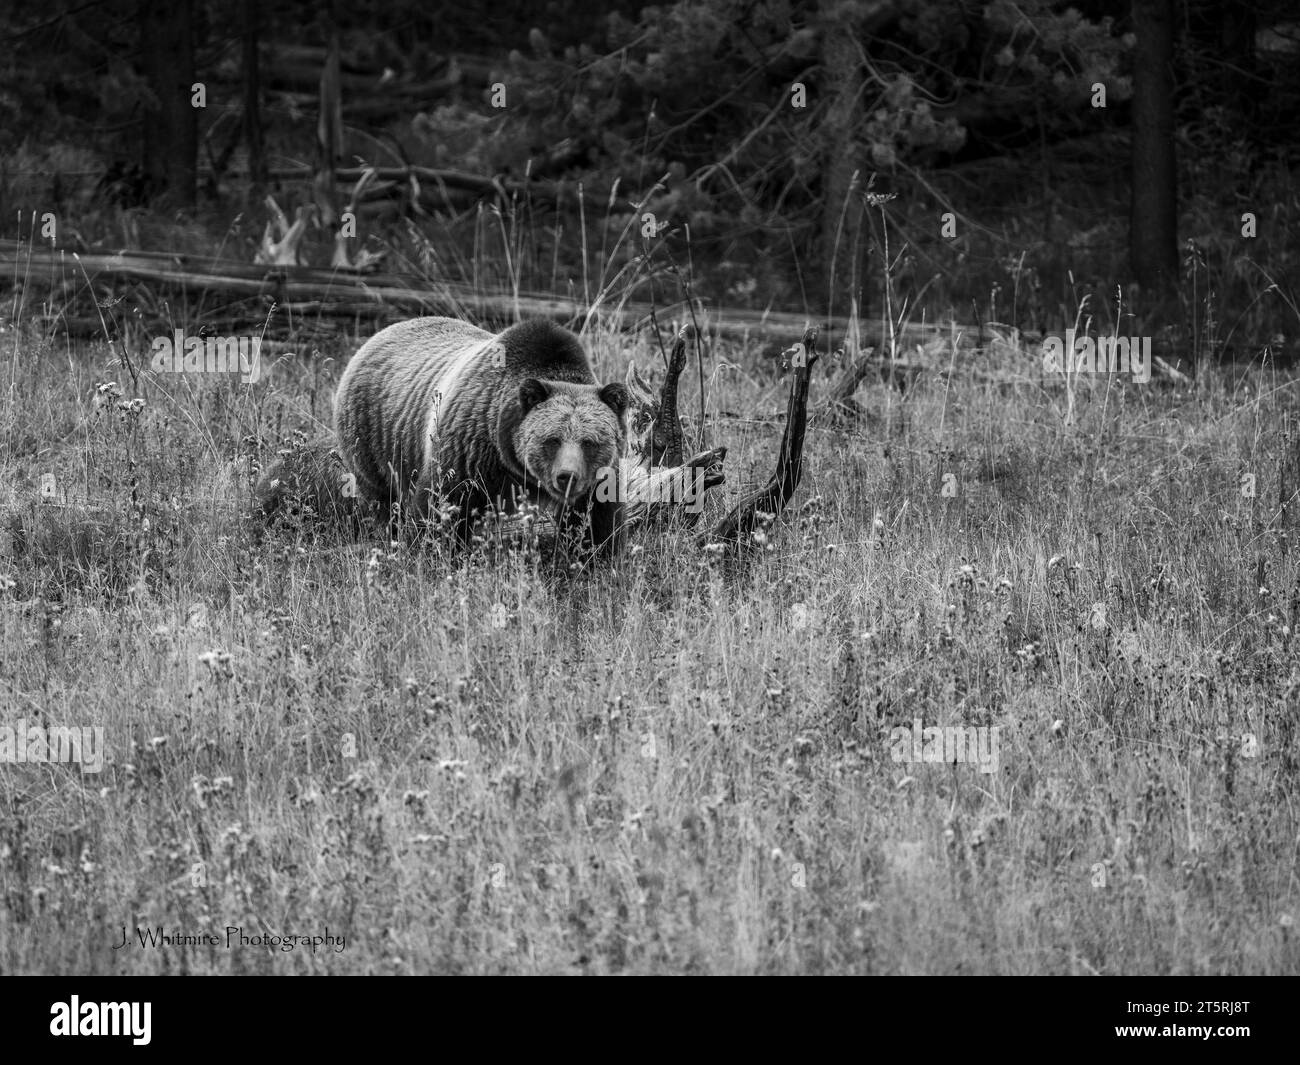 Un orso grizzly adulto con i suoi due cuccioli minori al seguito è assolutamente adorabile ma molto pericoloso Foto Stock